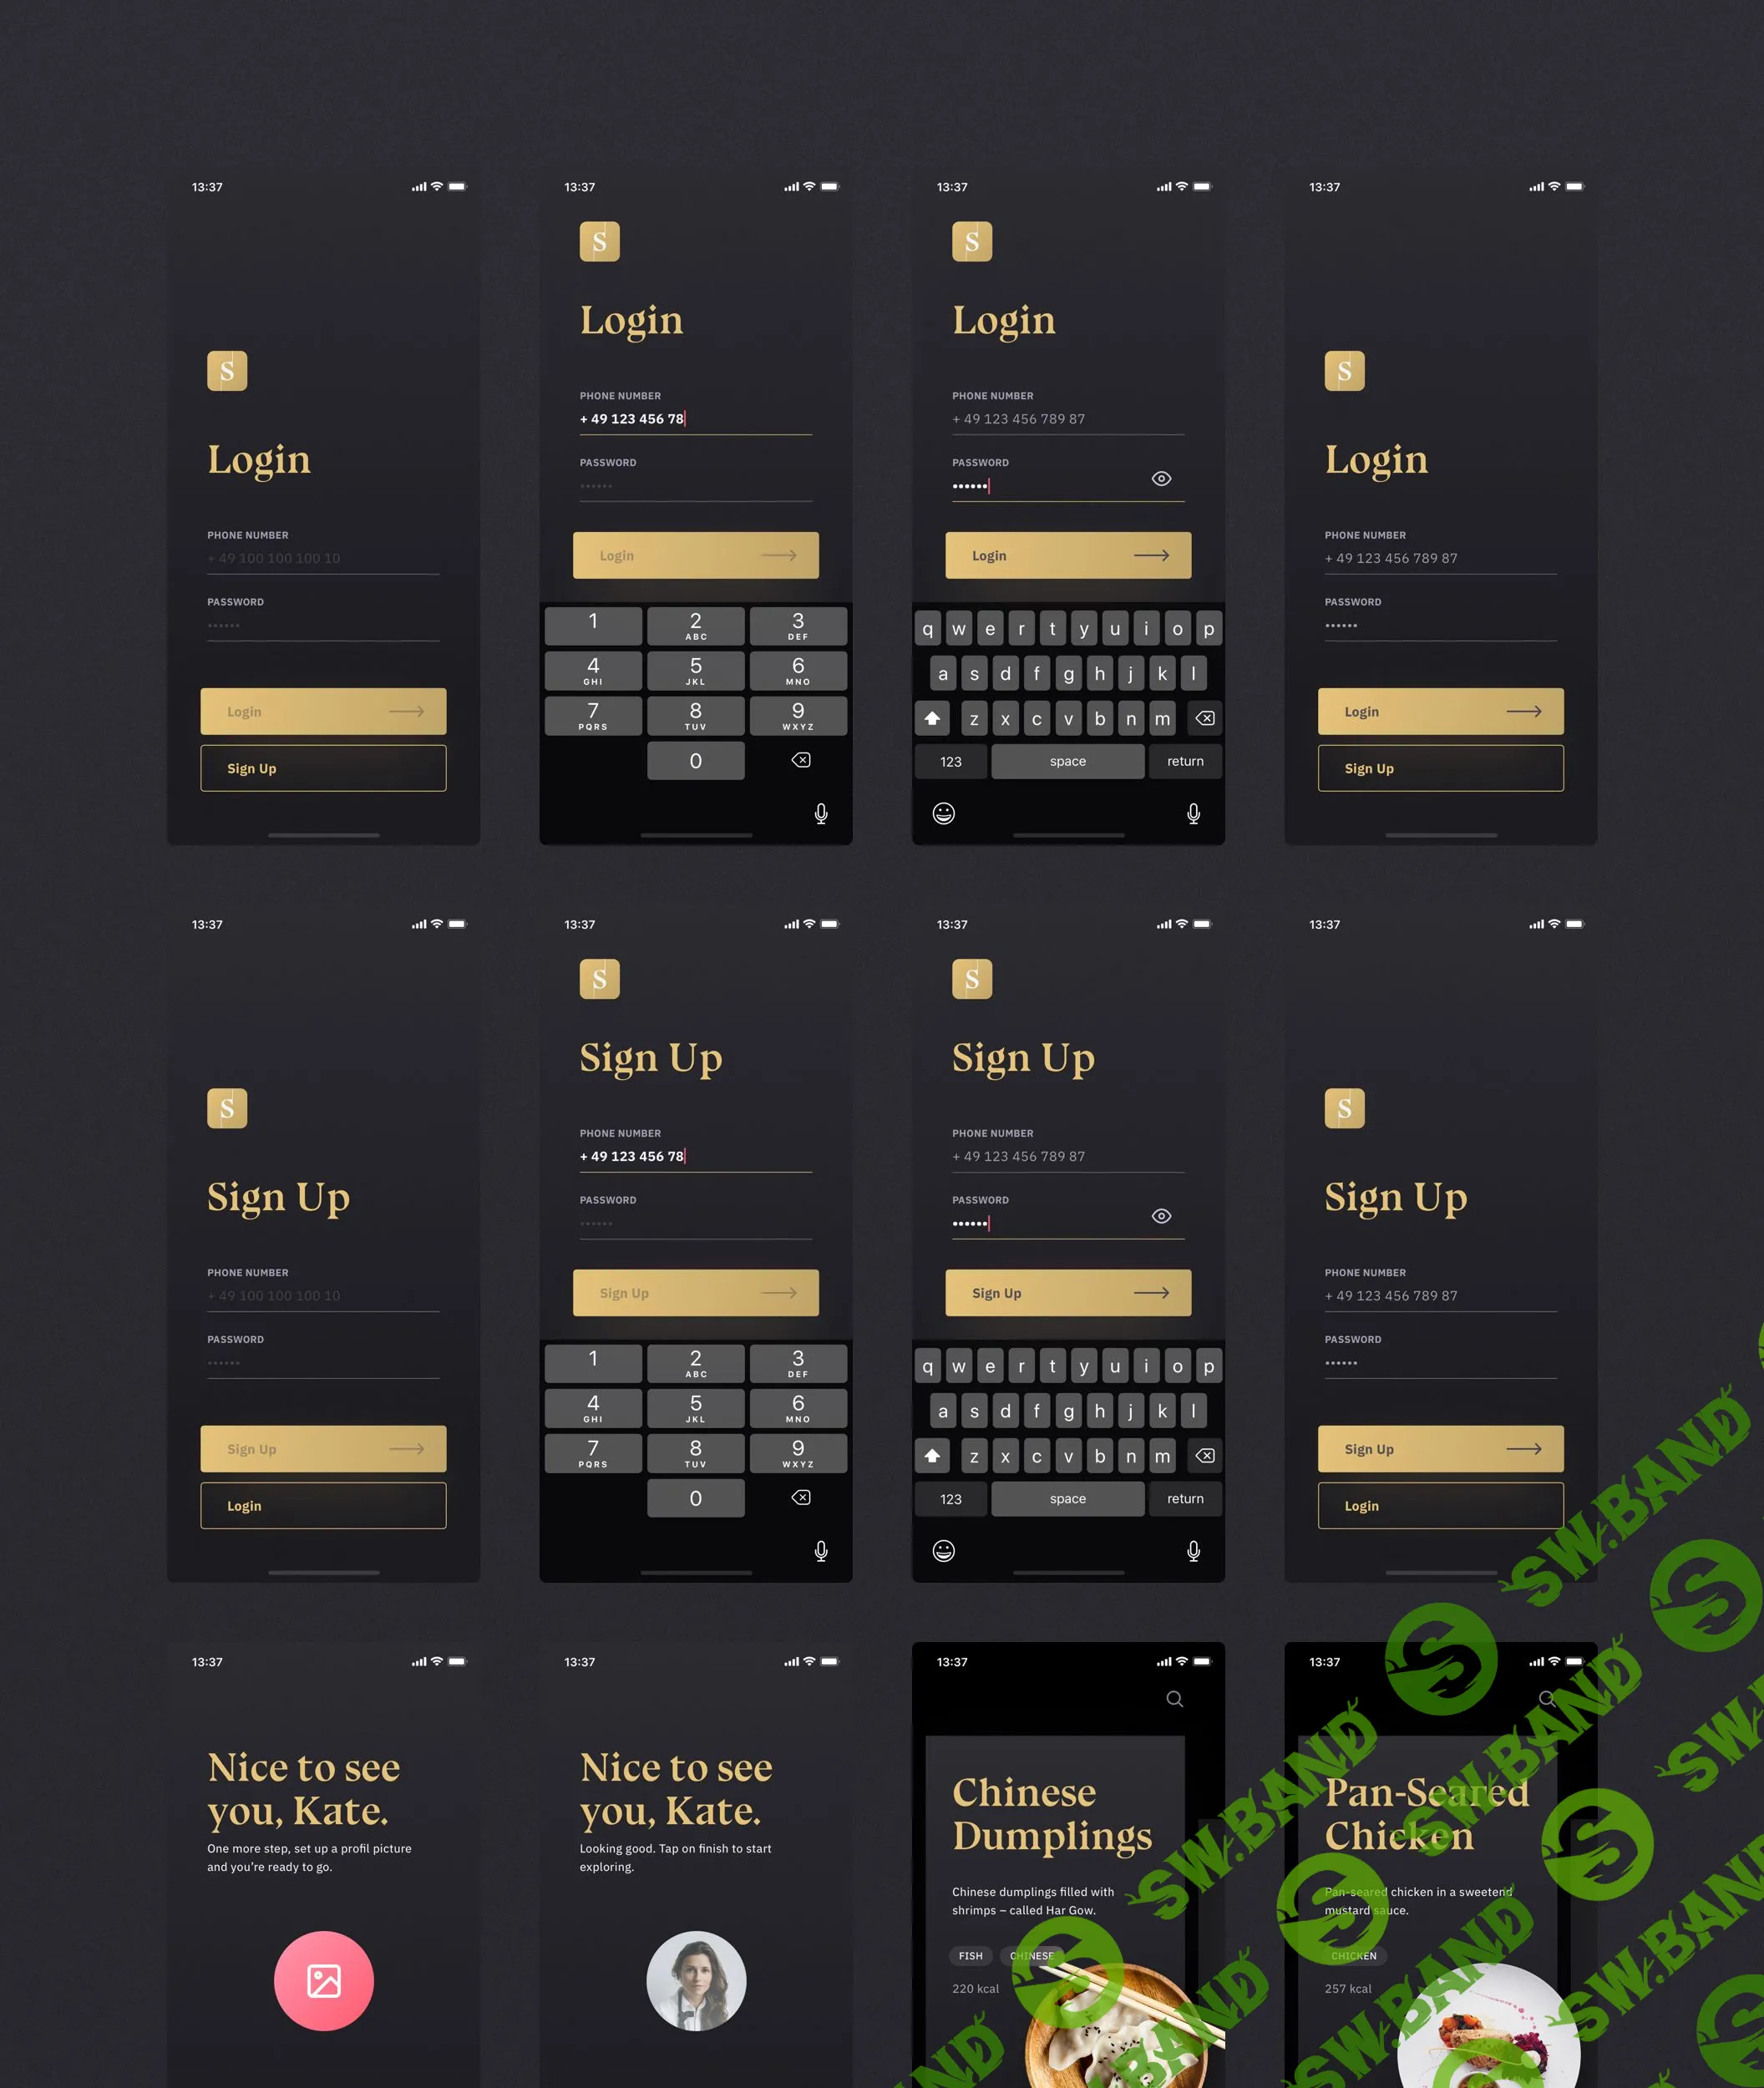 [UI8.net] Sheek Food iOS UI Kit 6 94 PREVIEW